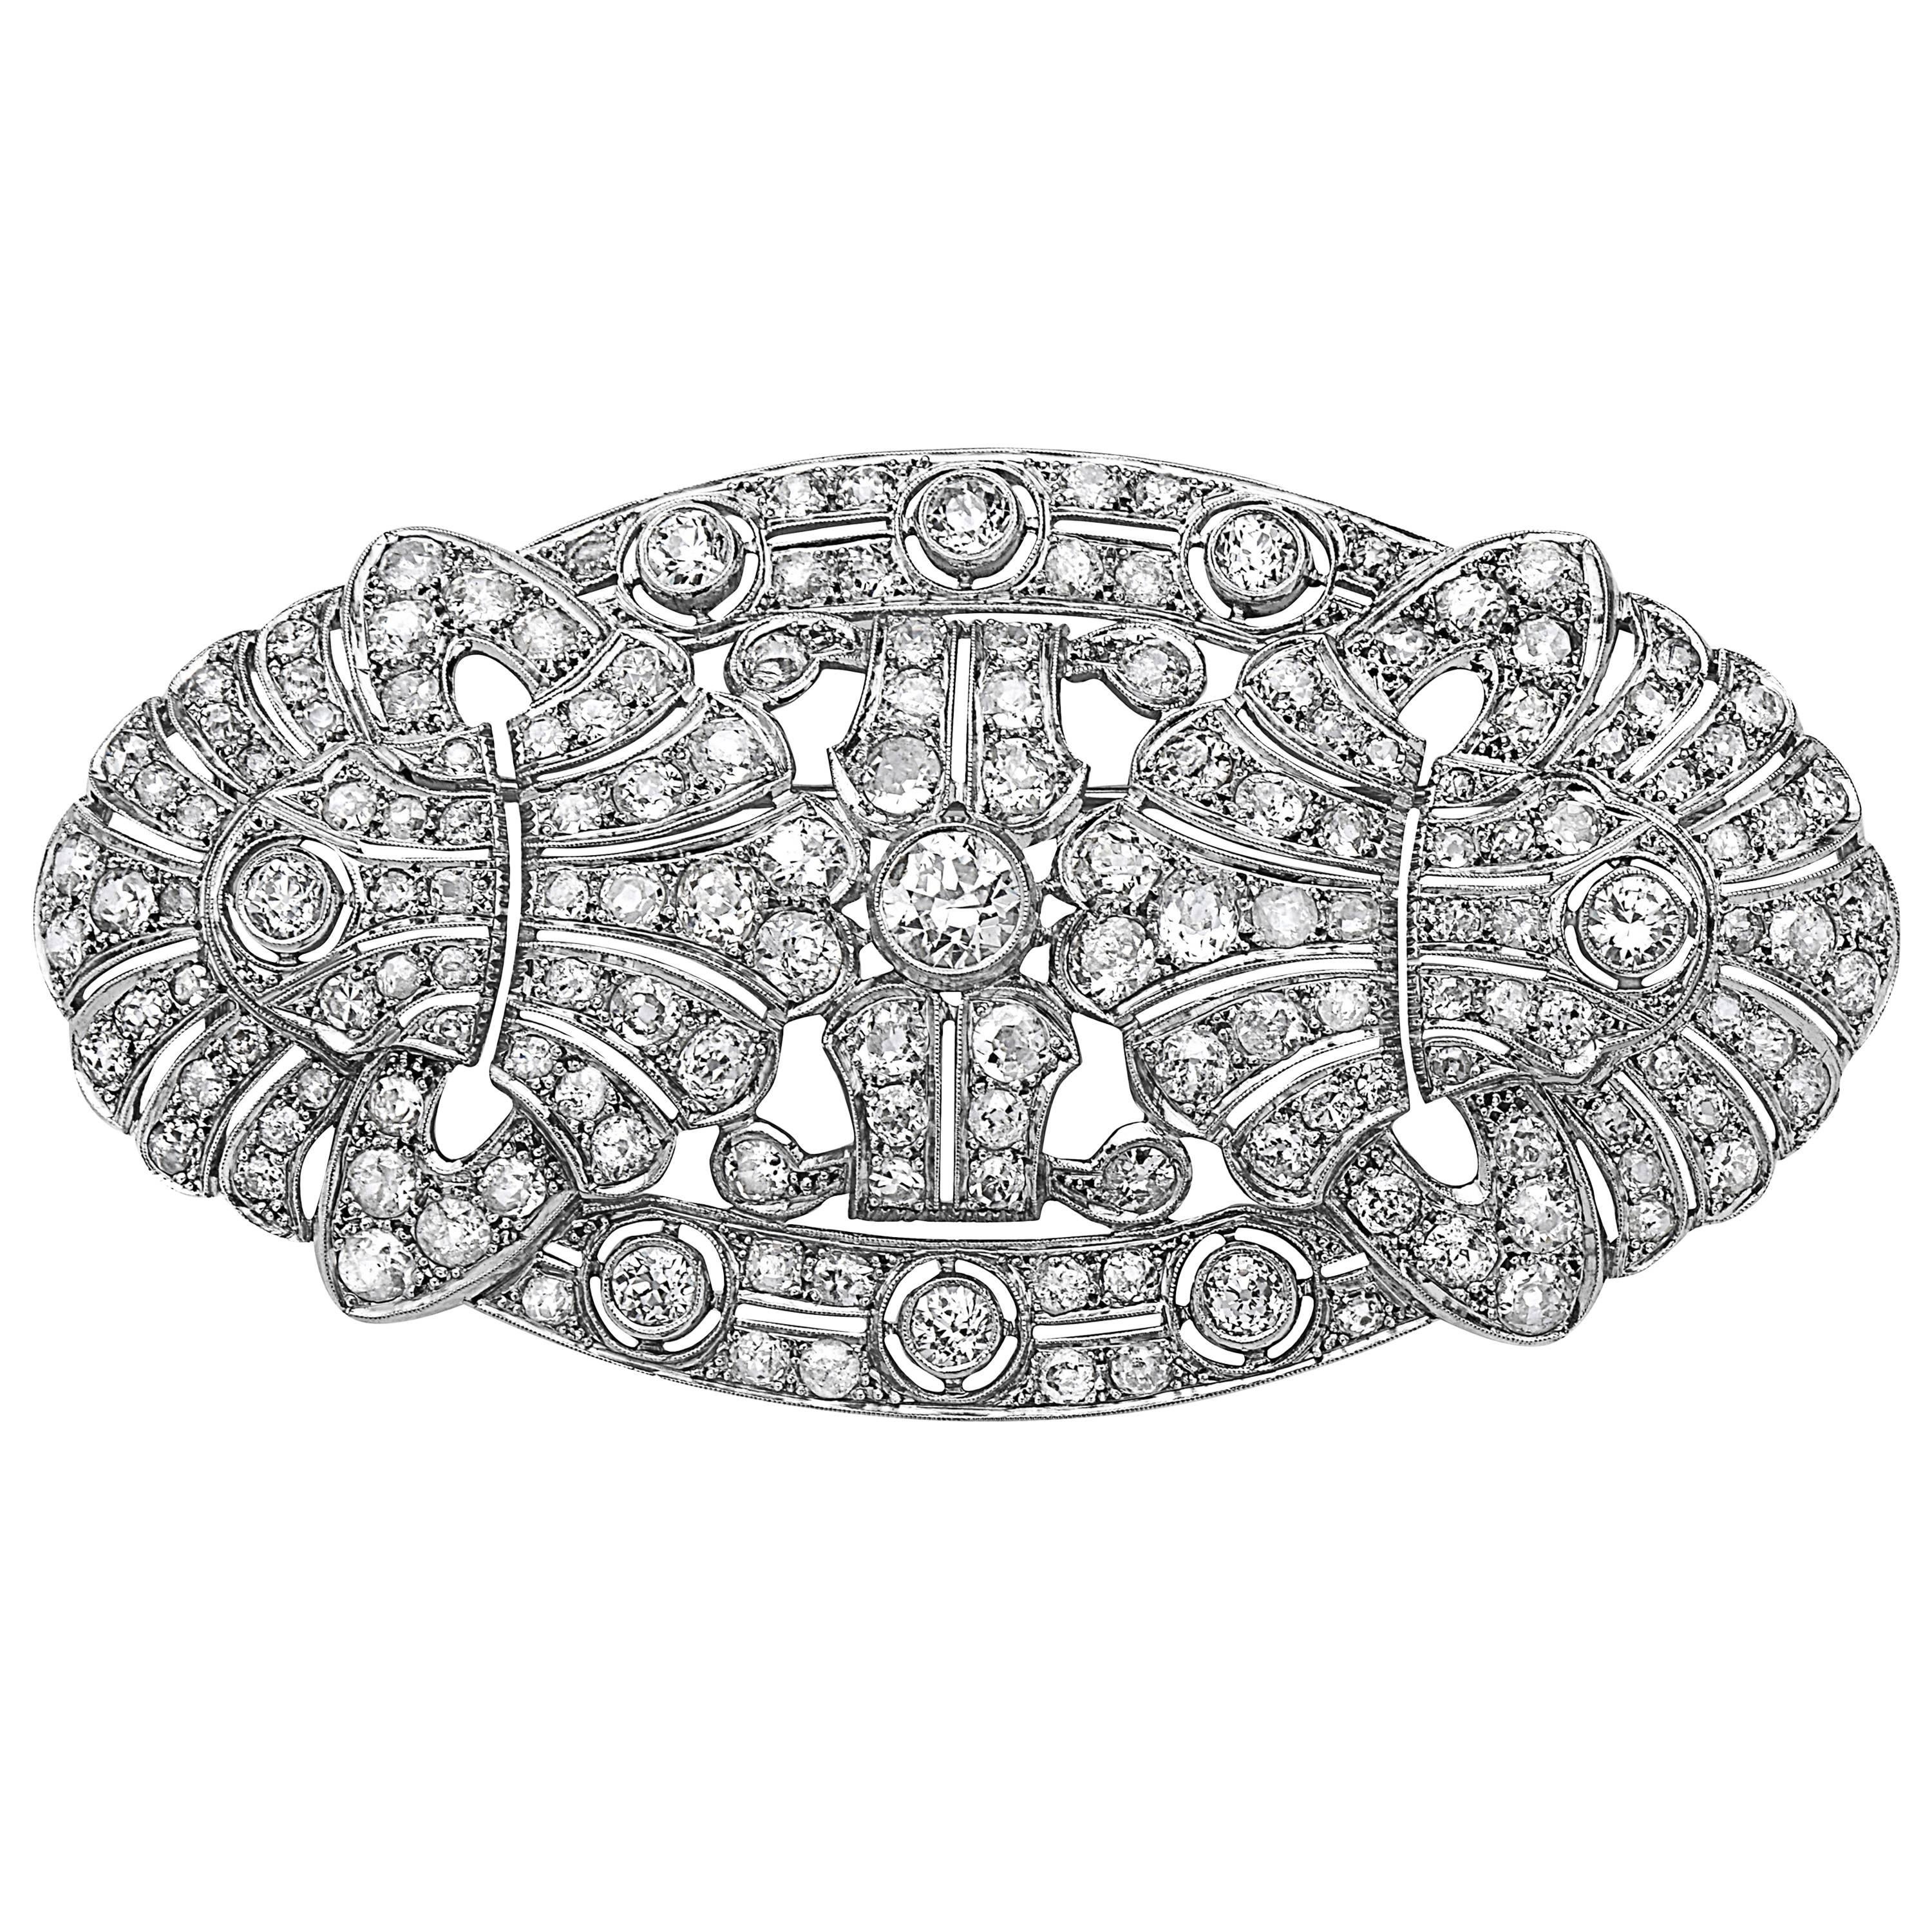 Emilio Jewelry 15.00 Carat Diamond Brooch or Pendant